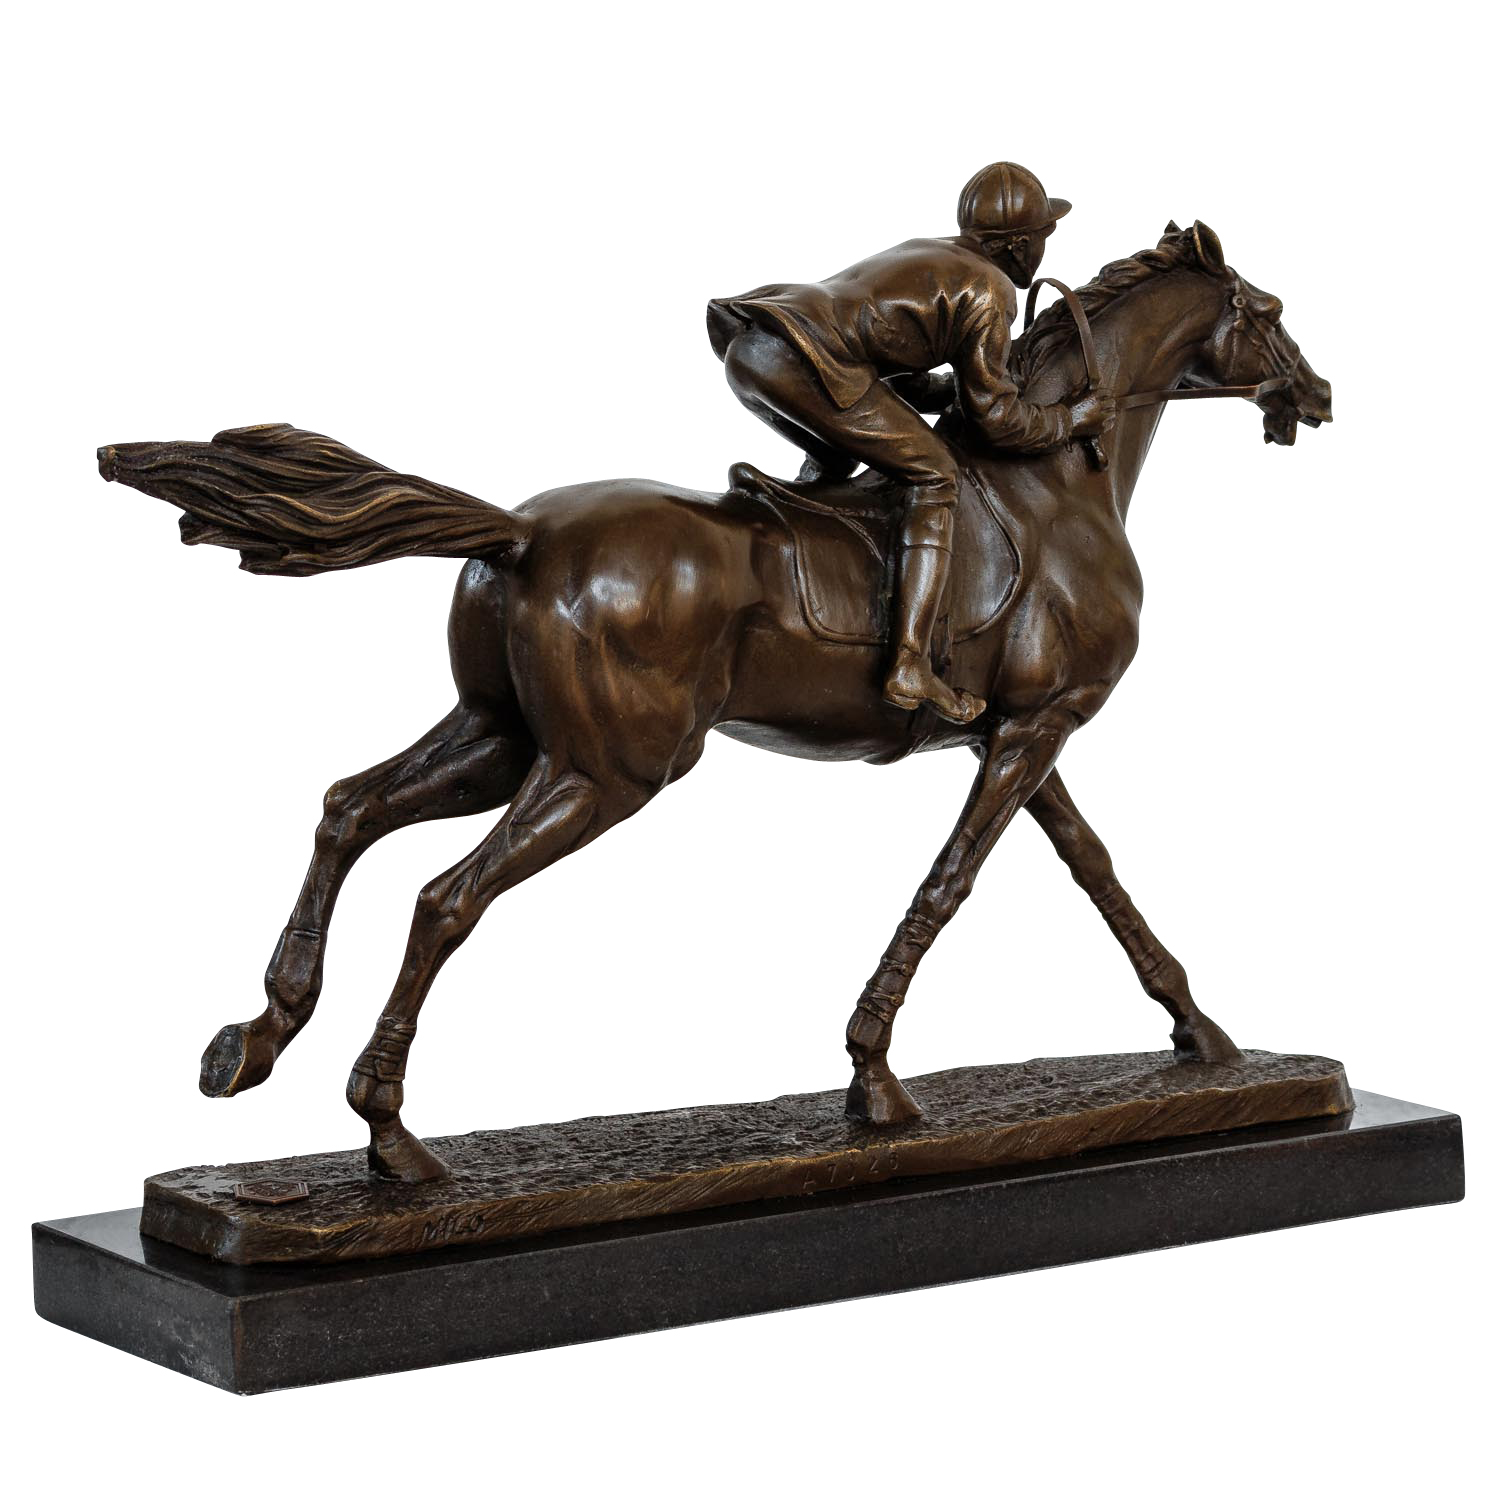 Fin Qualité Signée Bronze De Un Cheval Et Jockey Academy Rca Racing Sculpture 